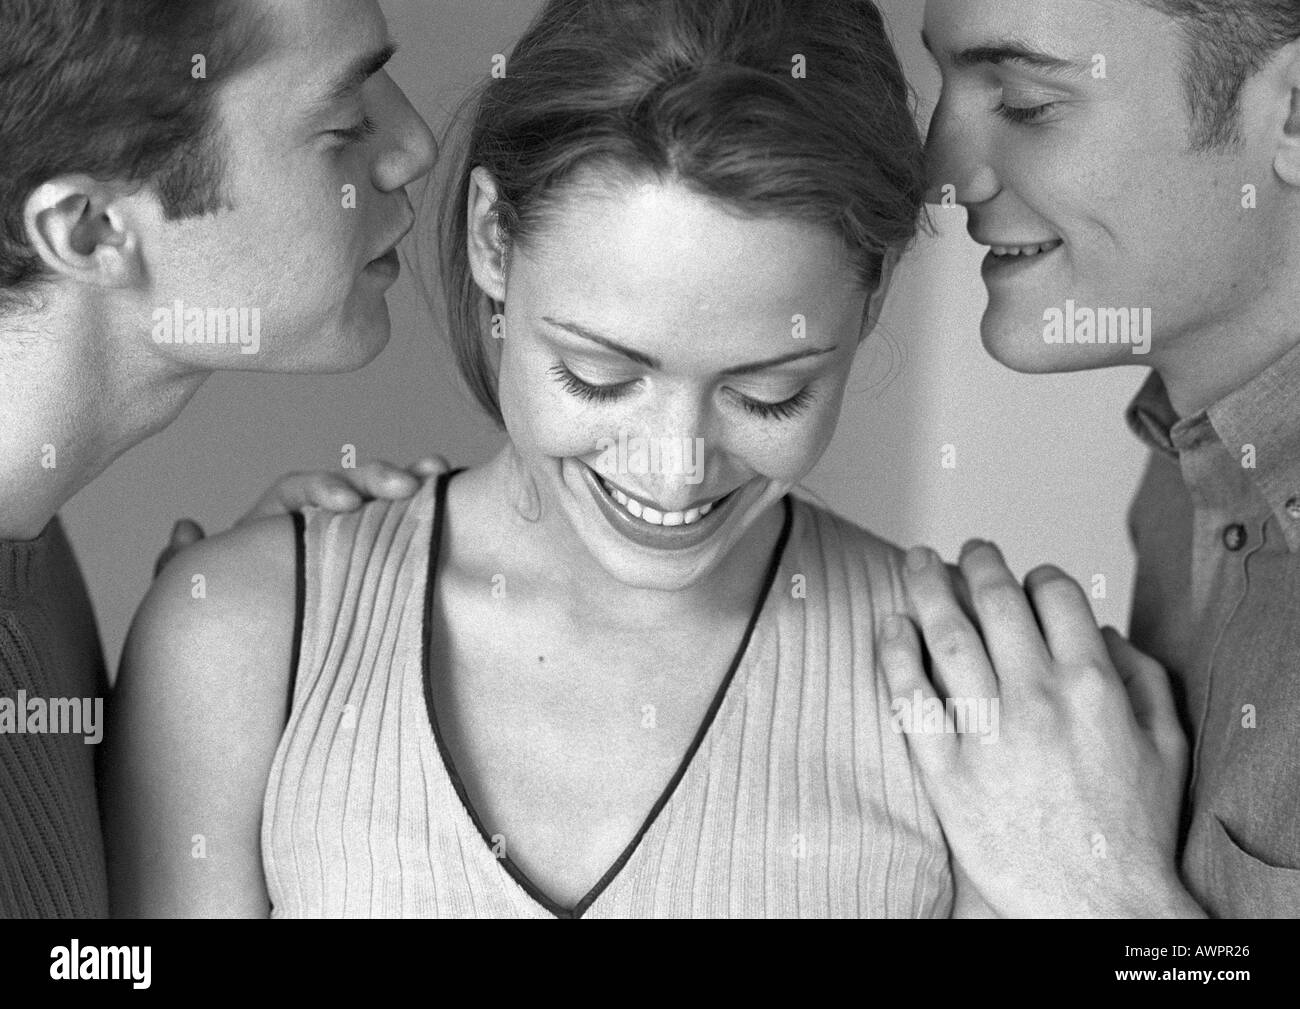 Femme debout entre deux hommes, les deux hommes chuchoter à woman, close-up, b&w Banque D'Images